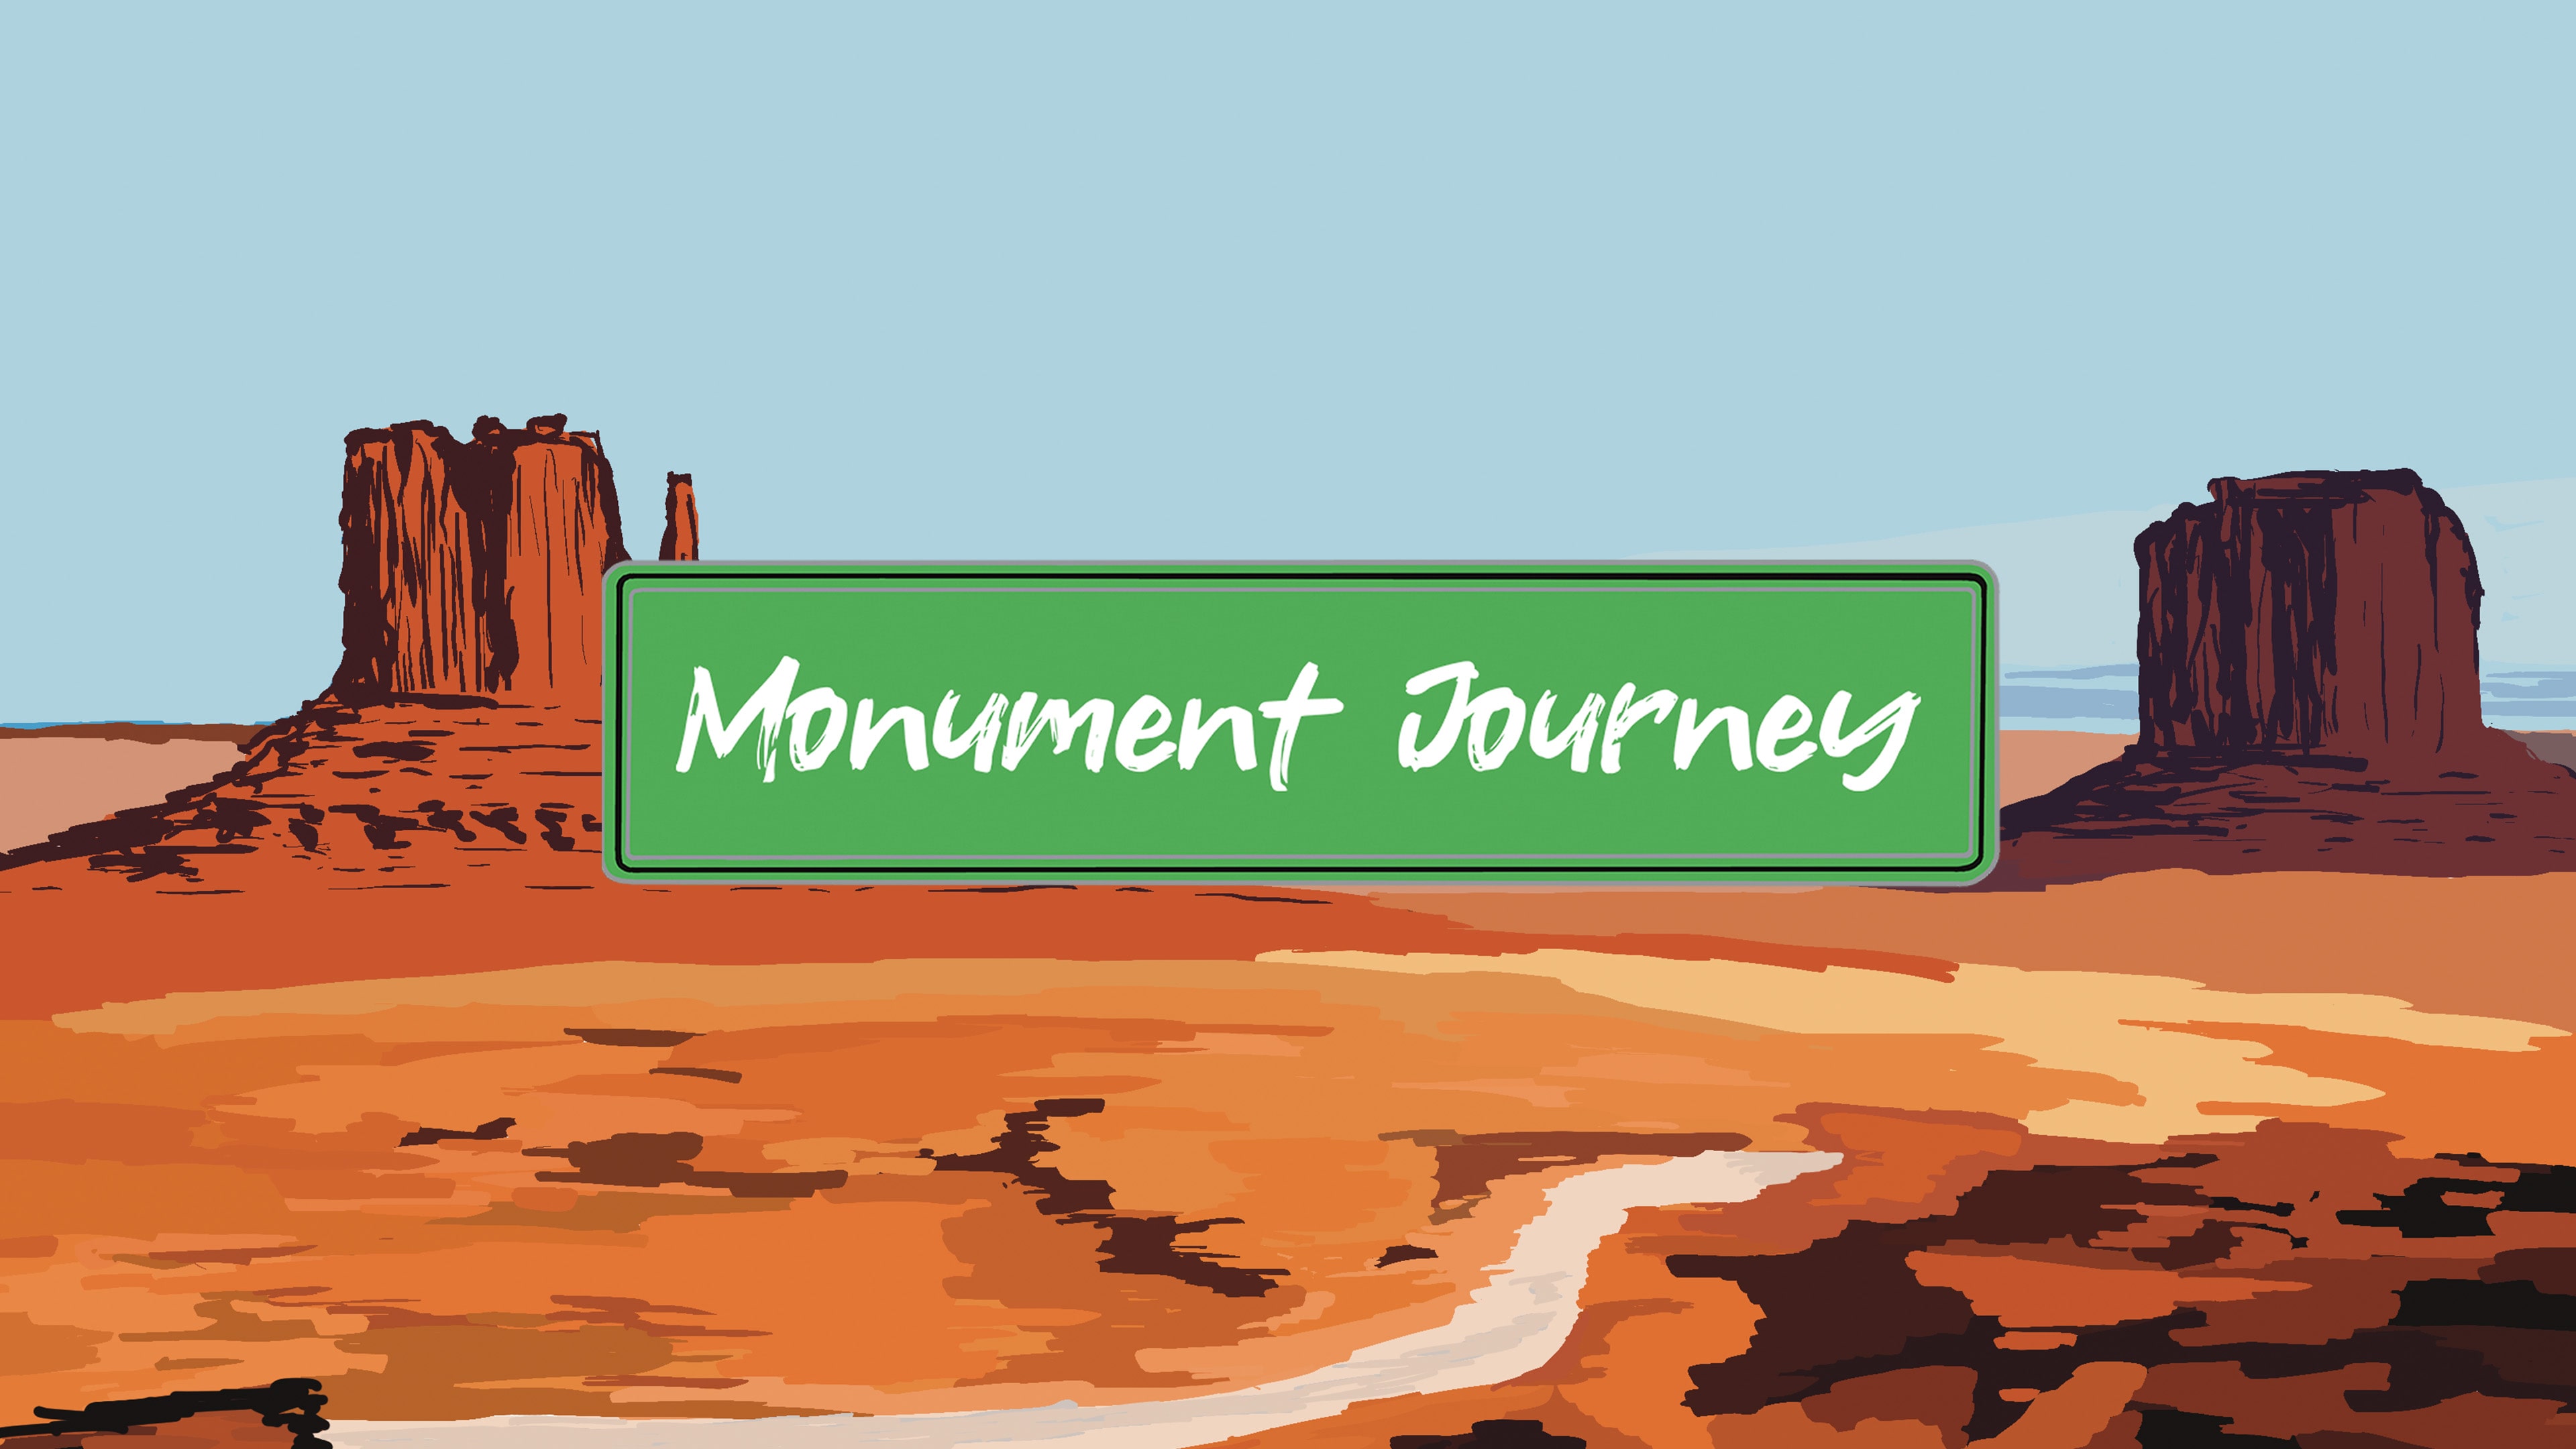 Monument Journey